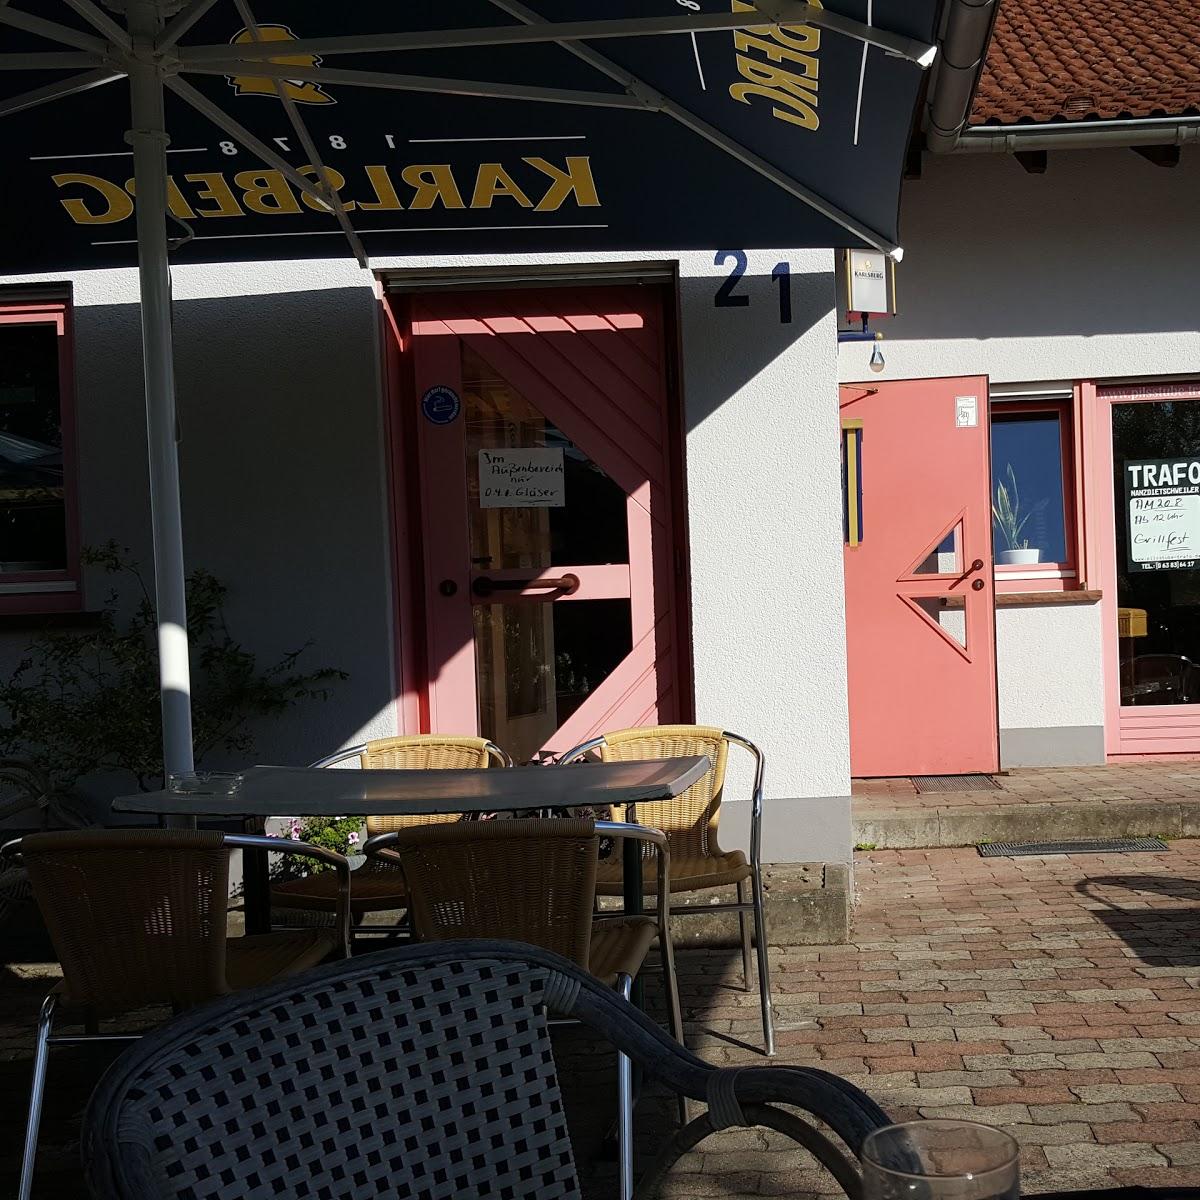 Restaurant "Gaststätte Trafo" in Nanzdietschweiler